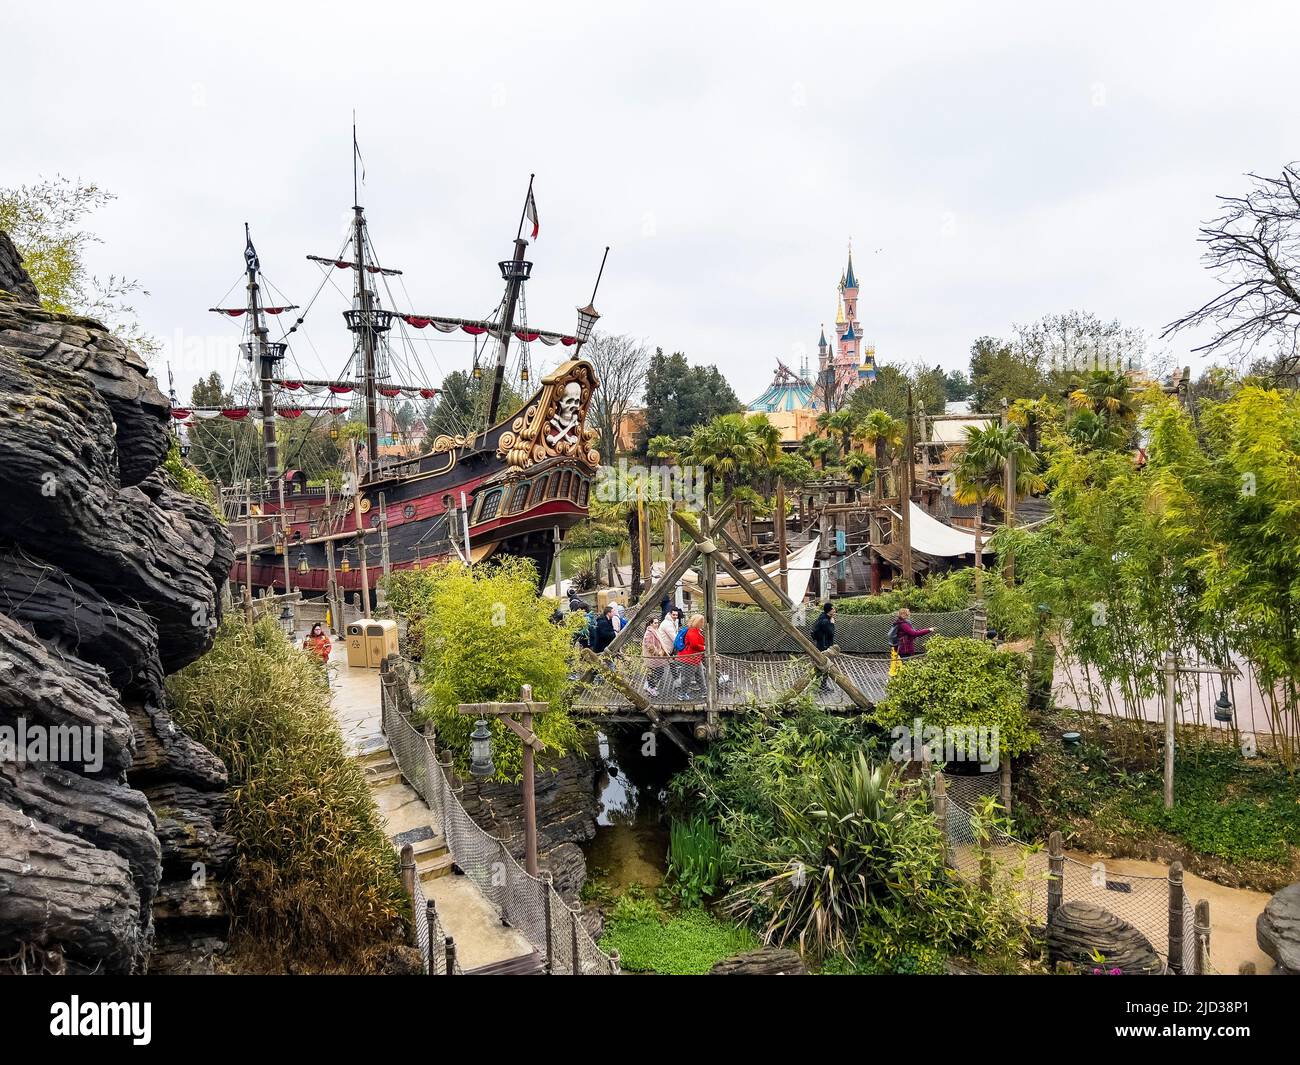 Parigi, Francia - 04/05/2022: Pirati dei Caraibi scena di giostre e luoghi di Disneyland Parigi. Modello di nave del capitano Jack Sparrow. Foto Stock